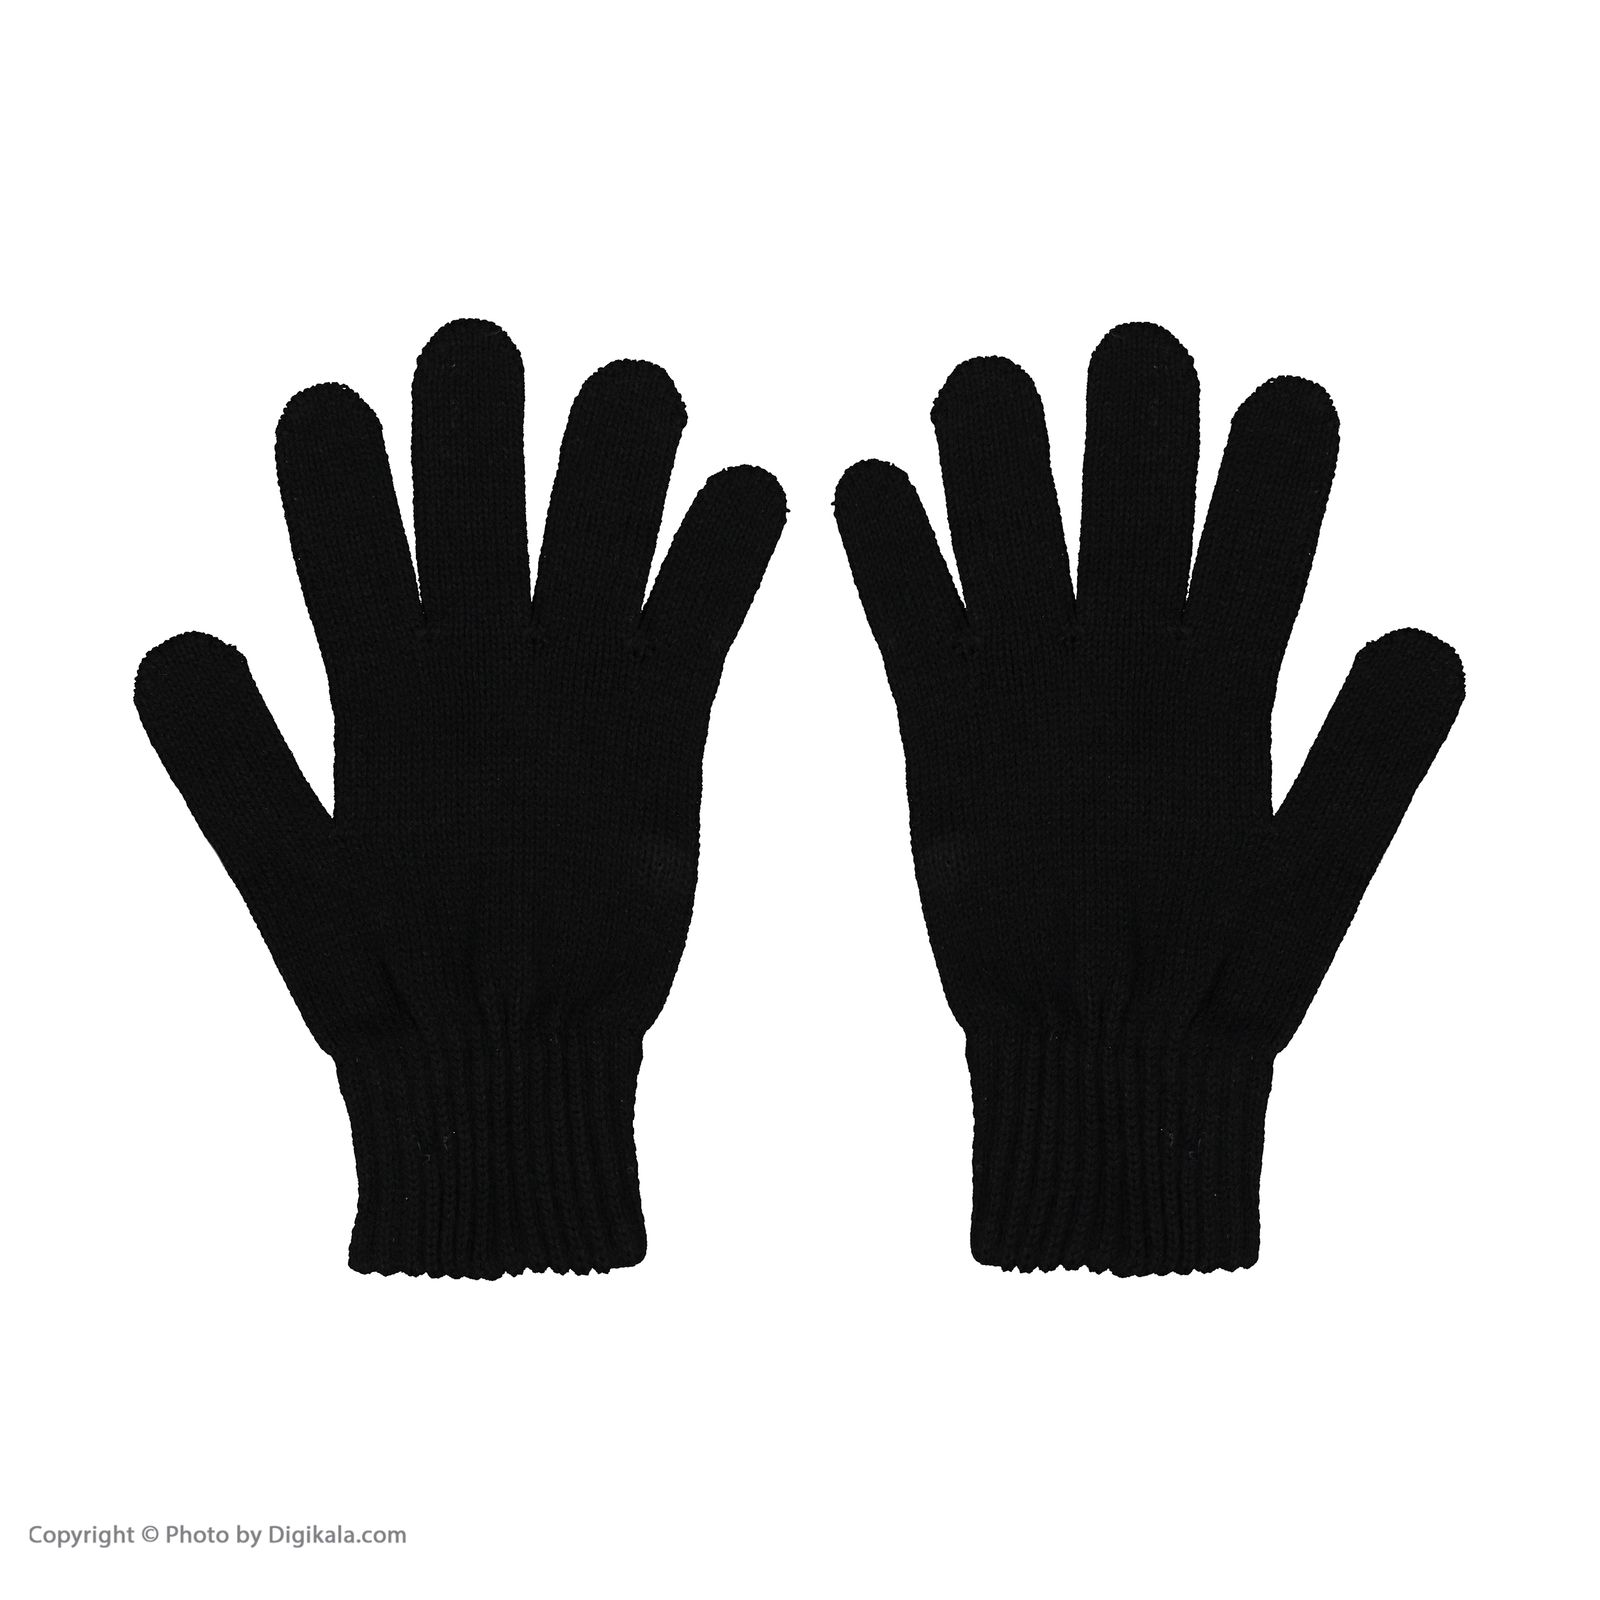 دستکش مردانه کینتیکس مدل 100223918 Black -  - 3